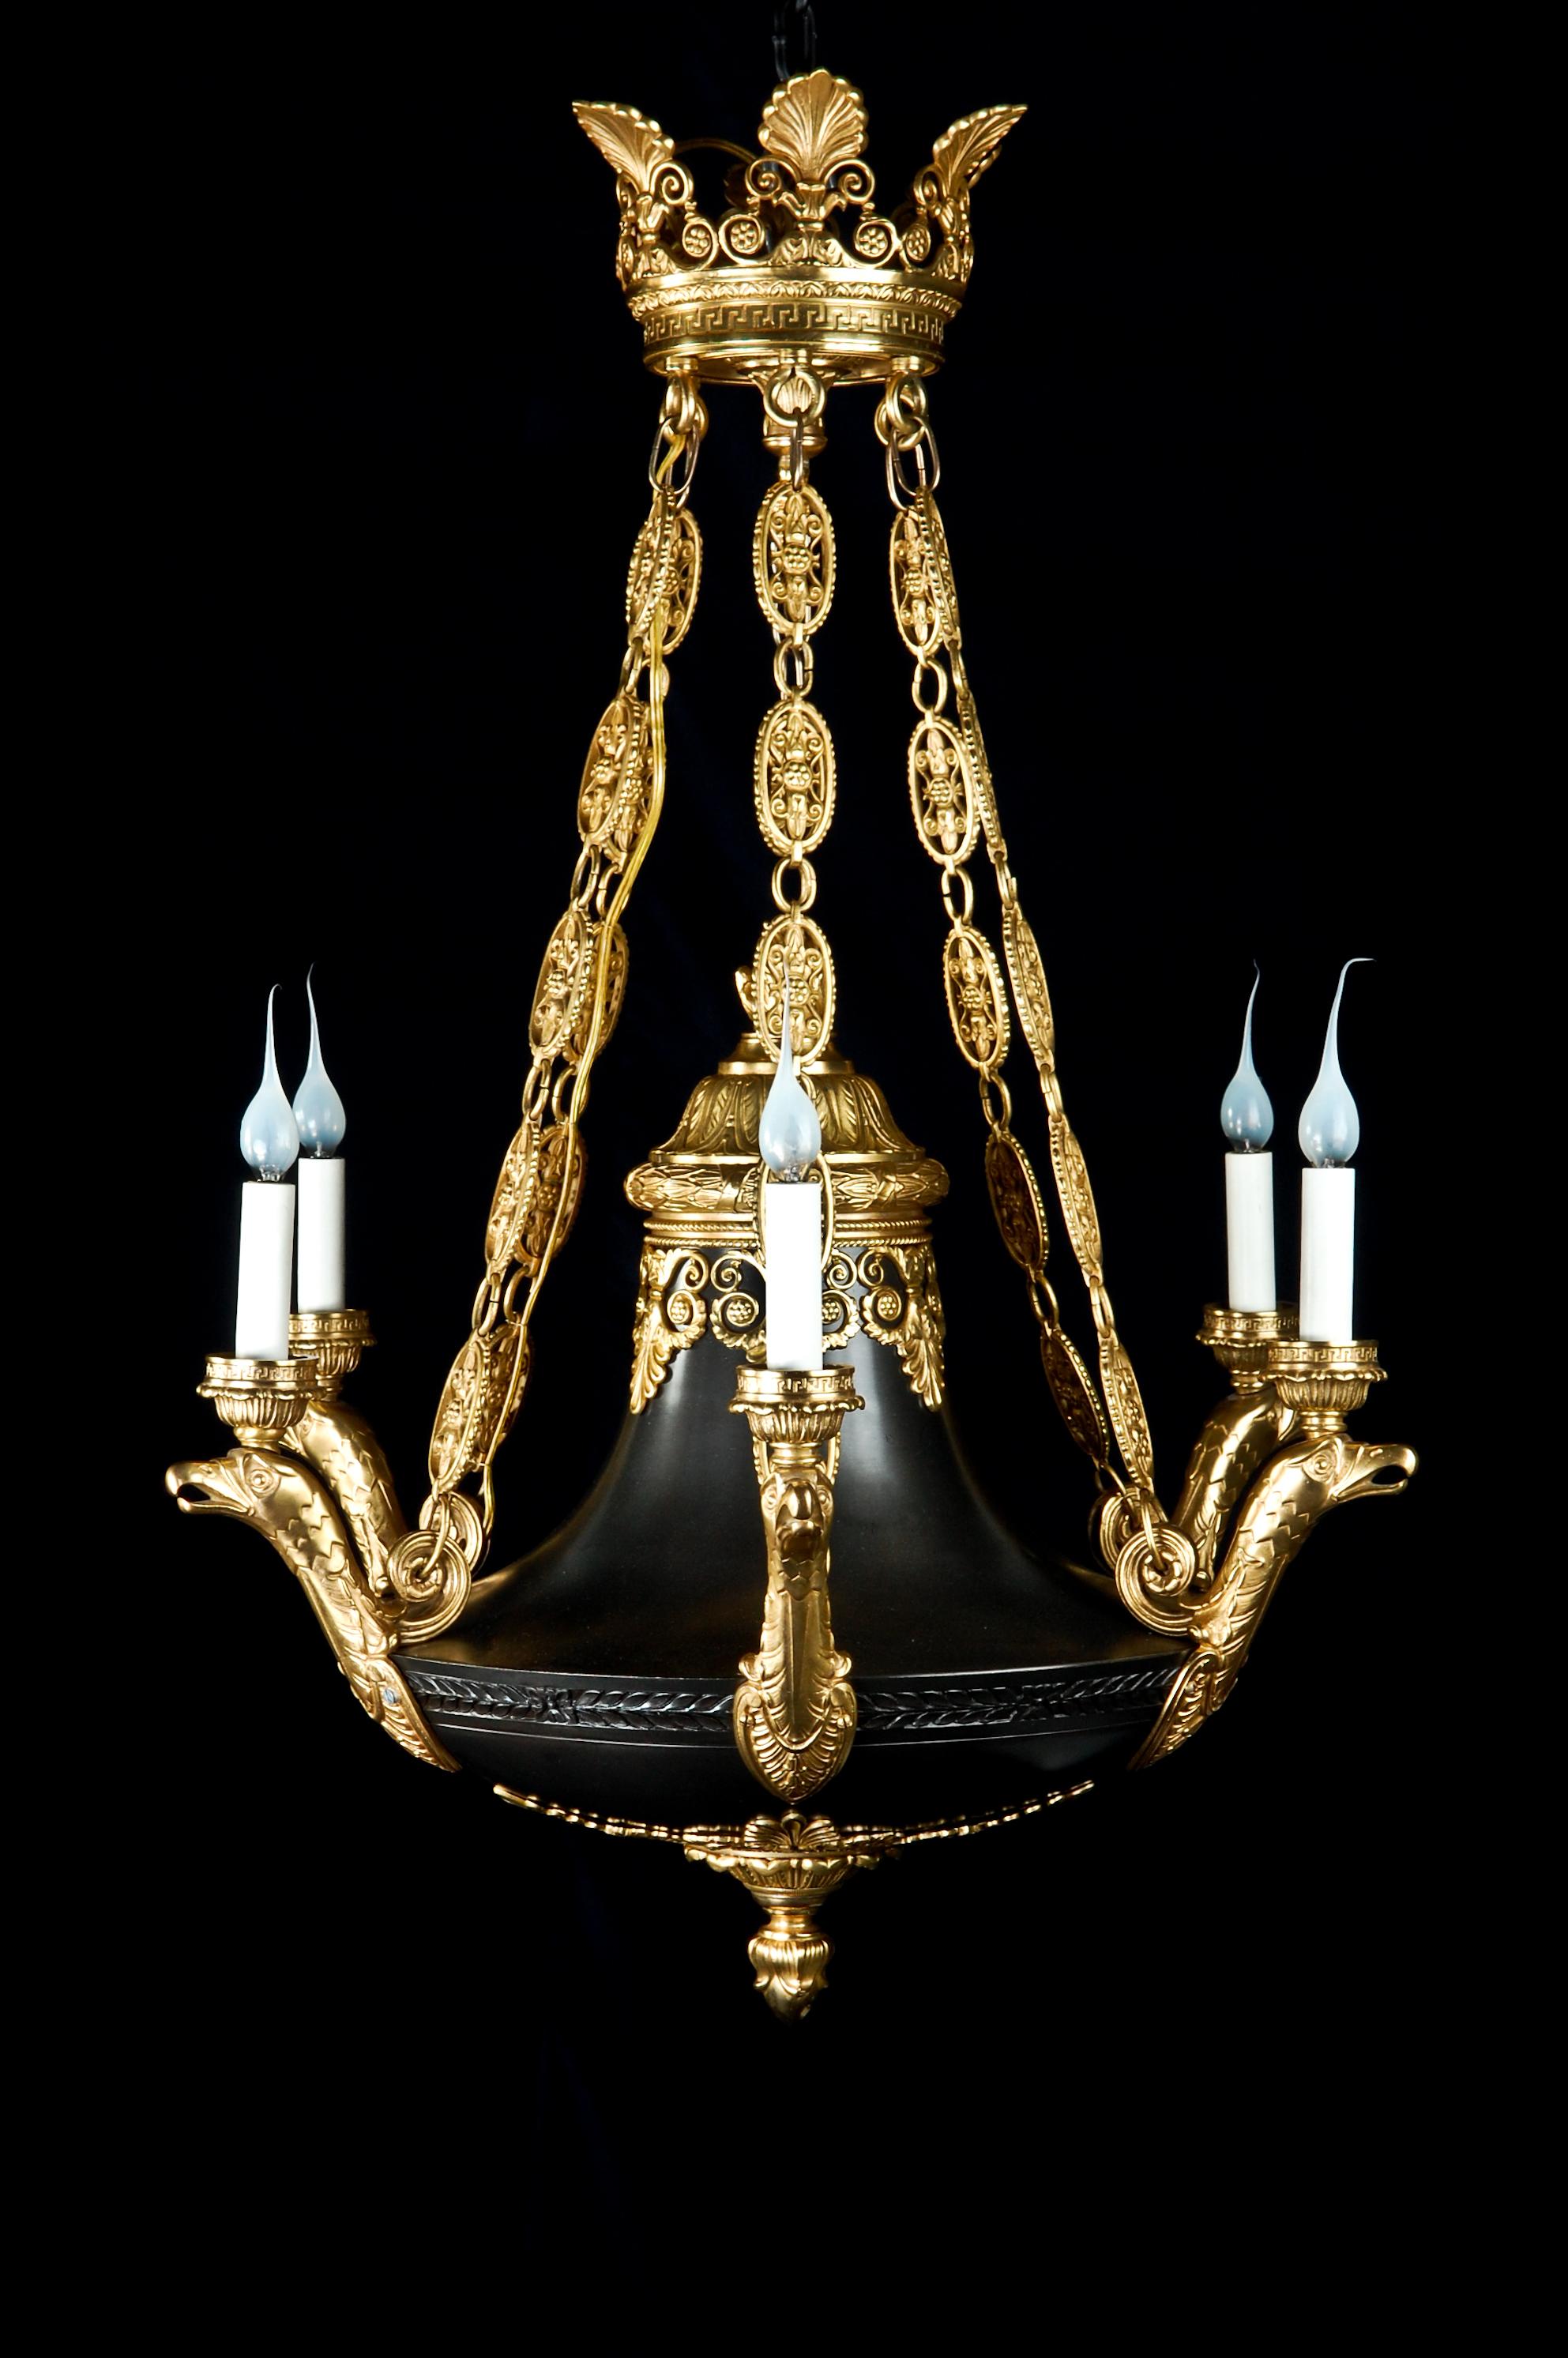 Eine hervorragende und einzigartige antike Französisch Empire-Stil neoklassischen vergoldet und patiniert Bronze Multi-Licht-Kronleuchter von feinen Details. Dieser schöne Kronleuchter ist mit netzartigen Ketten aus vergoldeter Bronze,